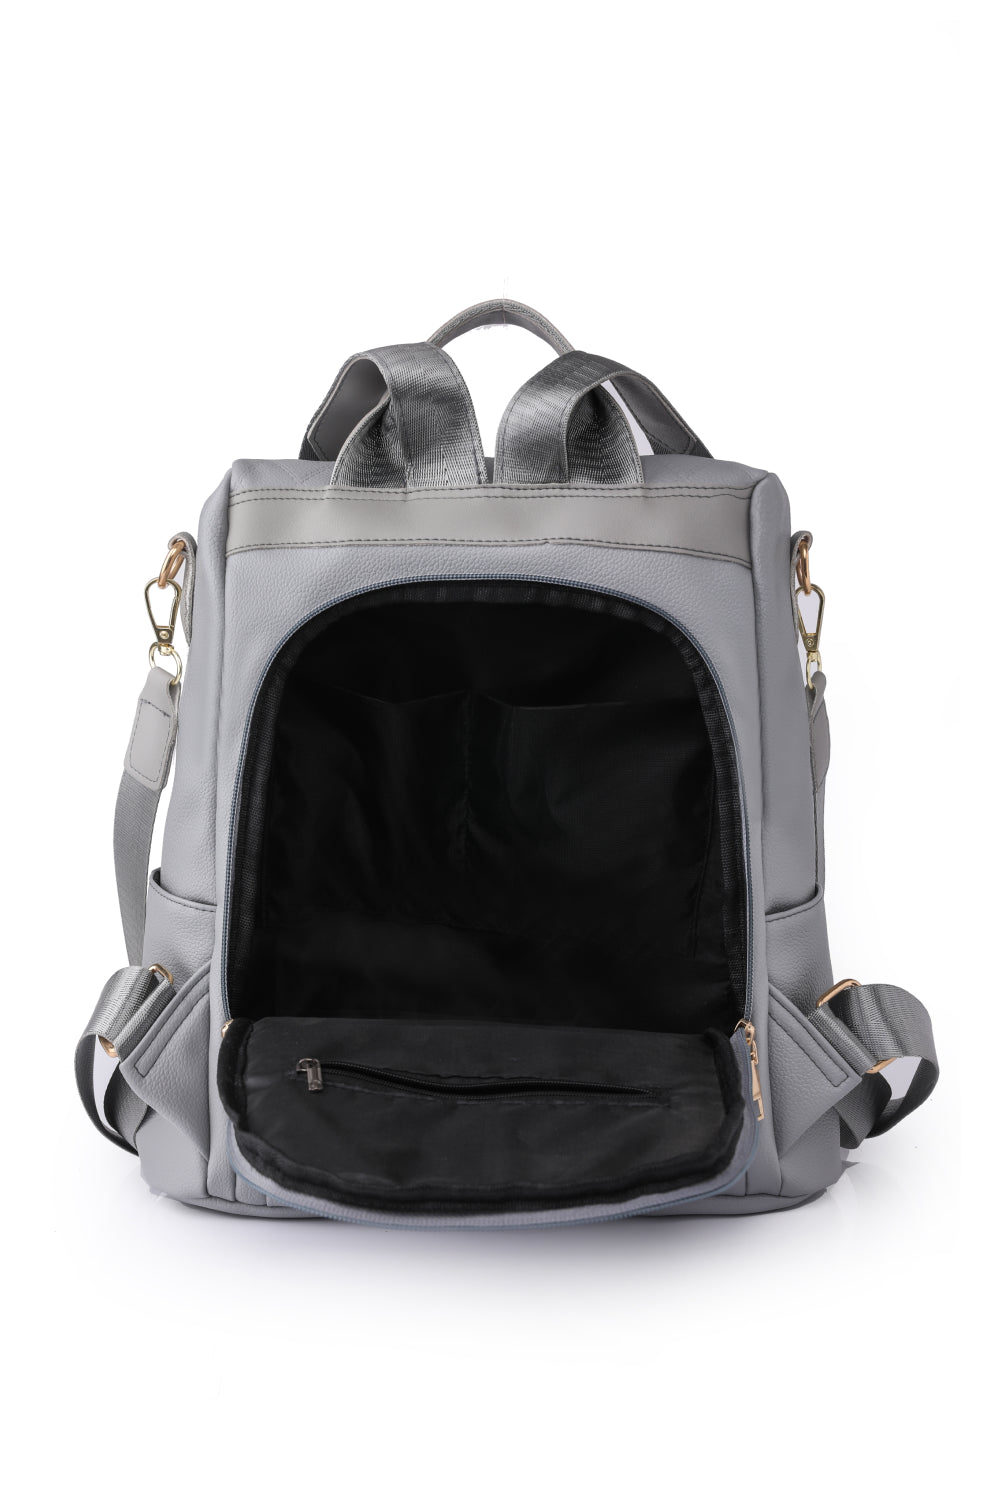 Light Gray Pum-Pum Zipper Backpack Clothing